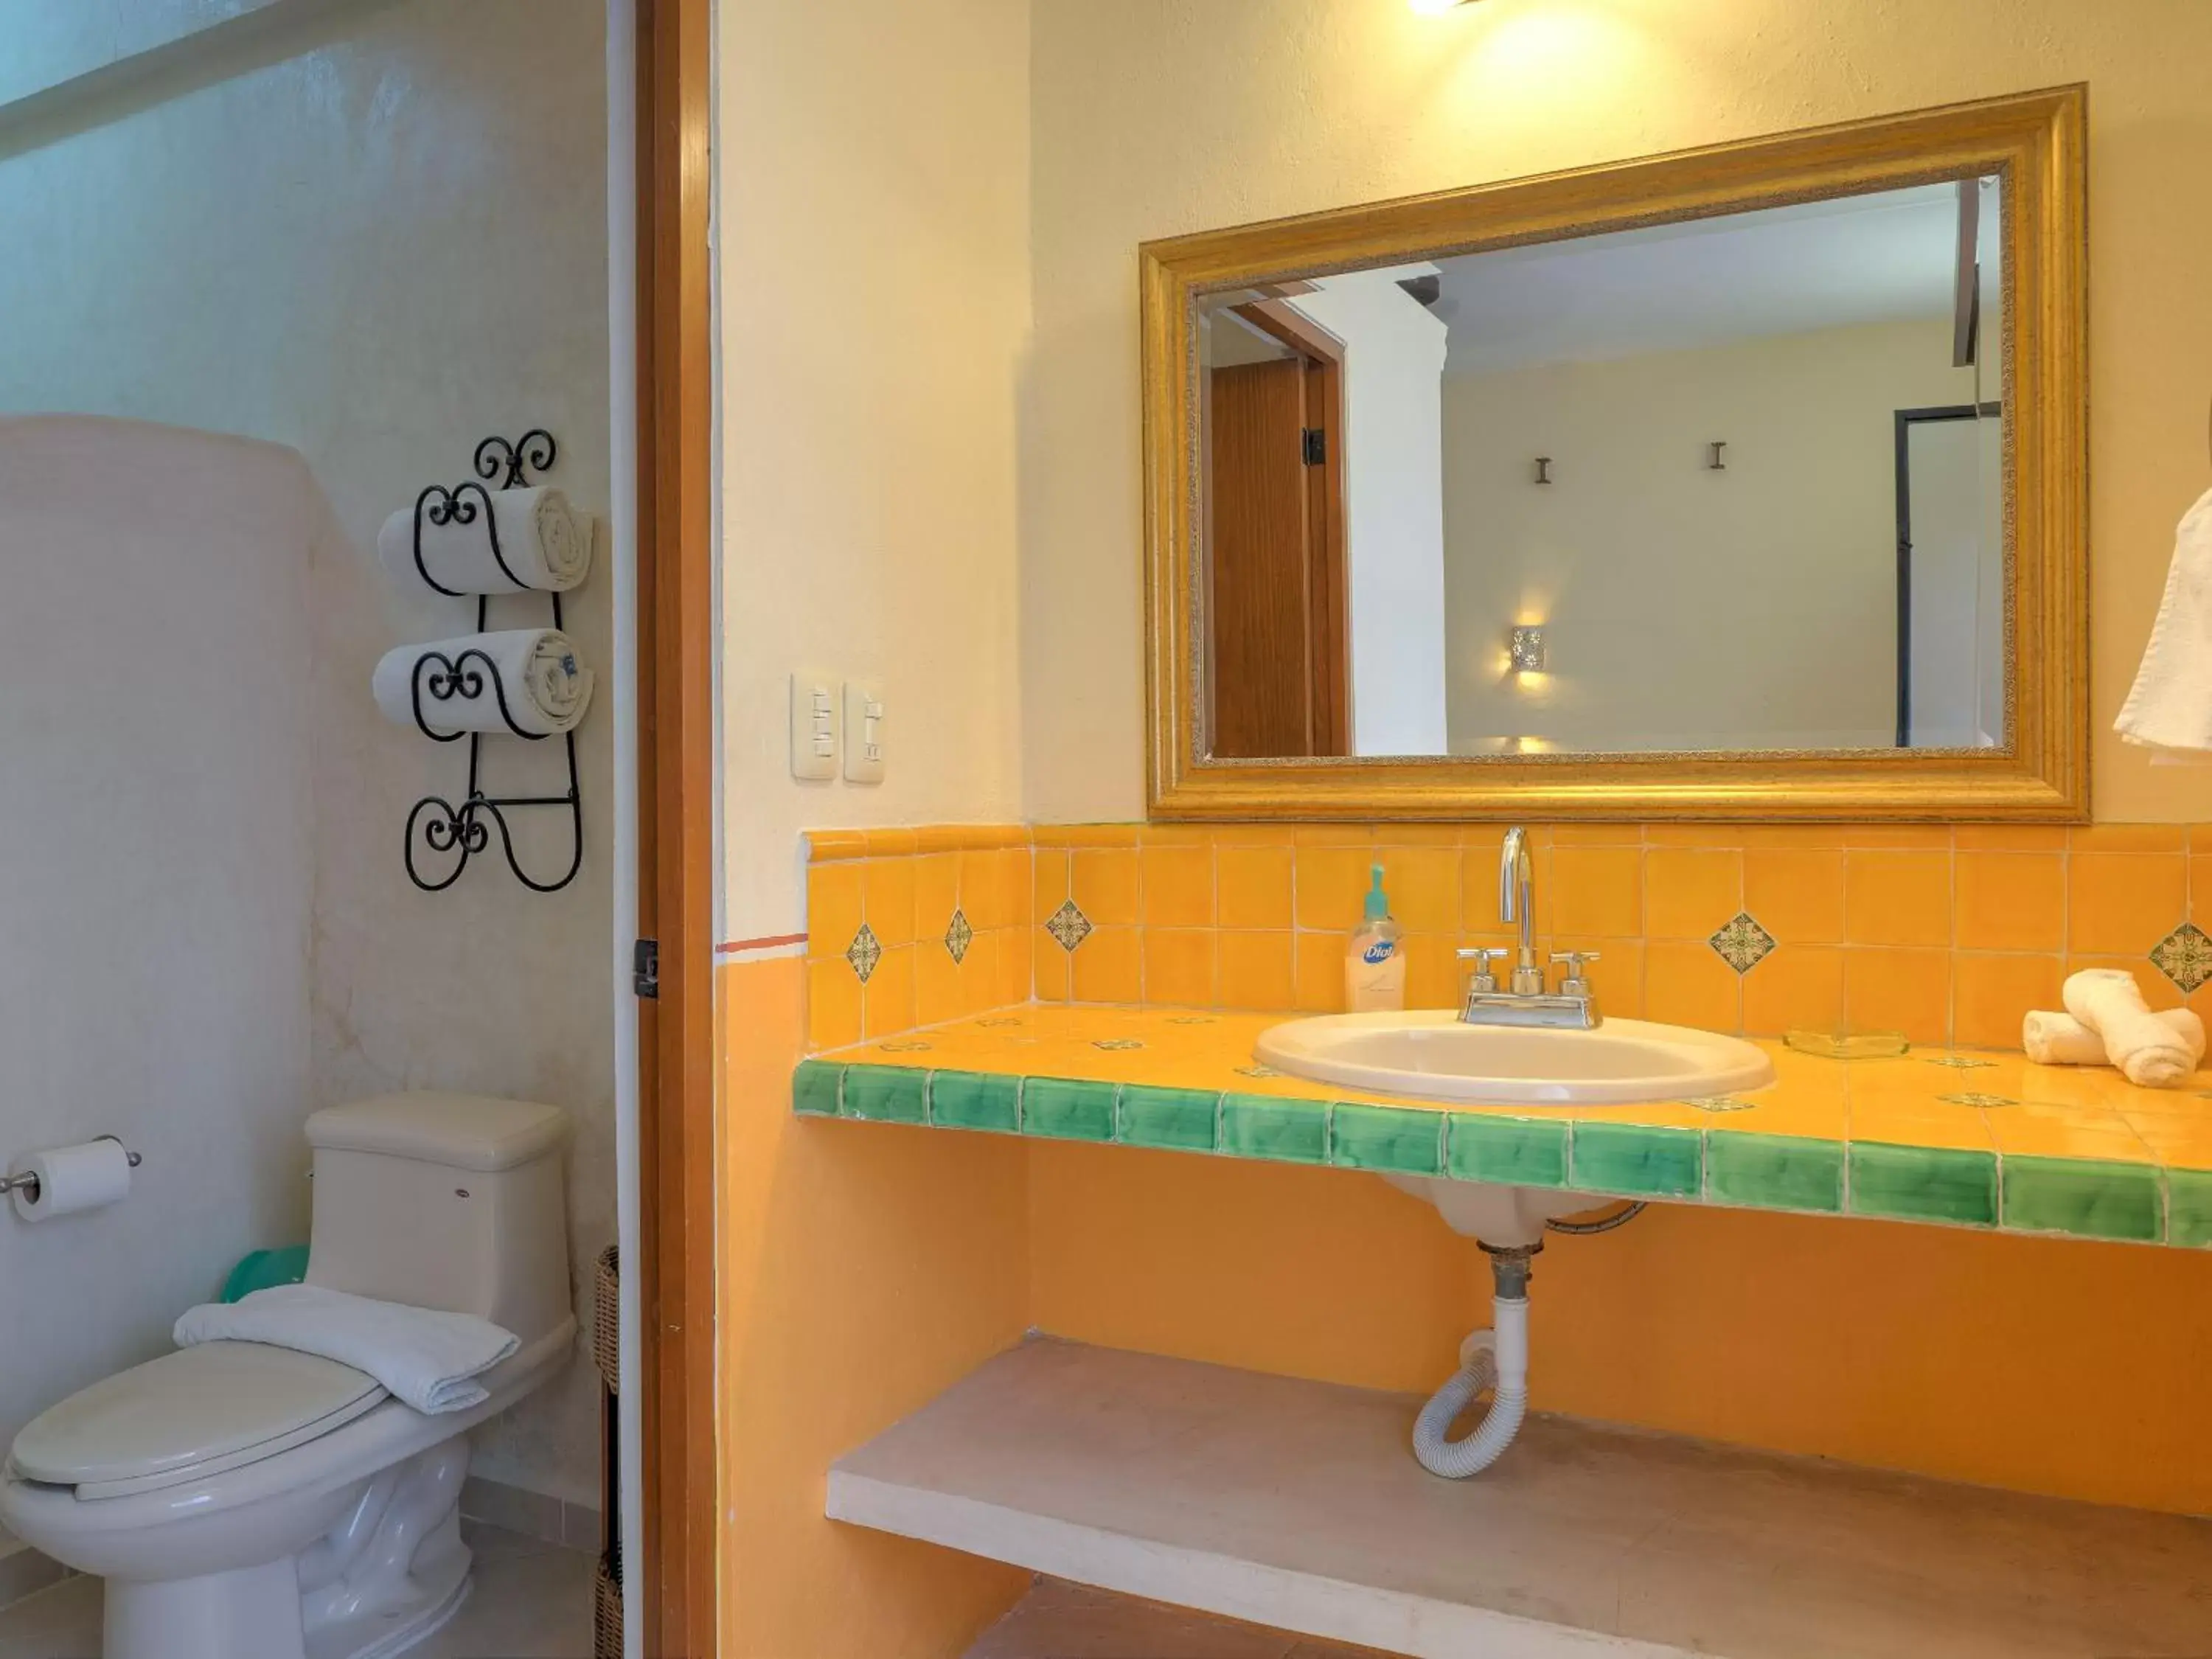 Bathroom in Hotel Luz en Yucatan